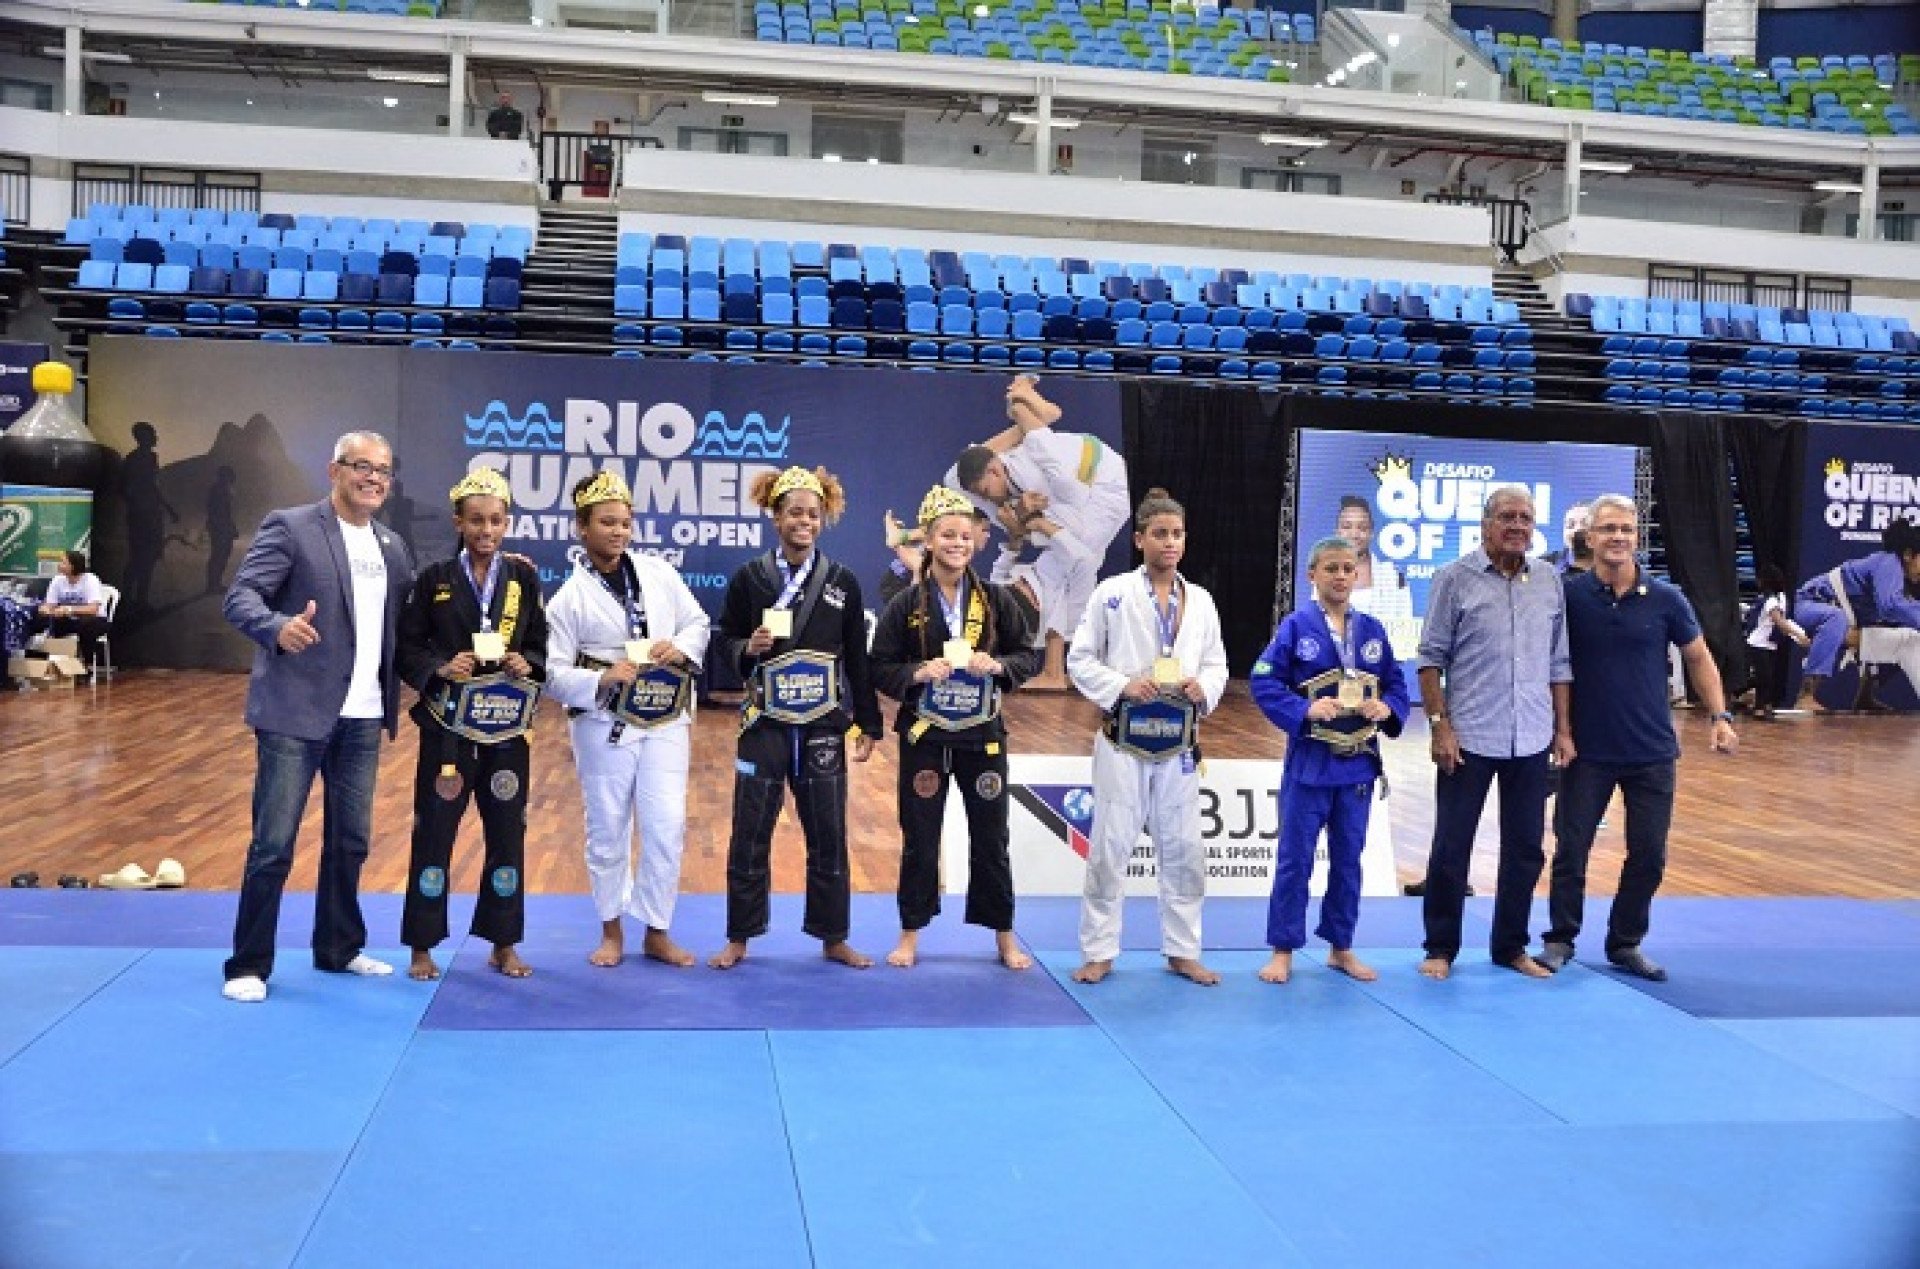 Queen of Rio foi um dos destaques do Rio Summer Open de Jiu-Jitsu  - (Foto: MBS Lutas)